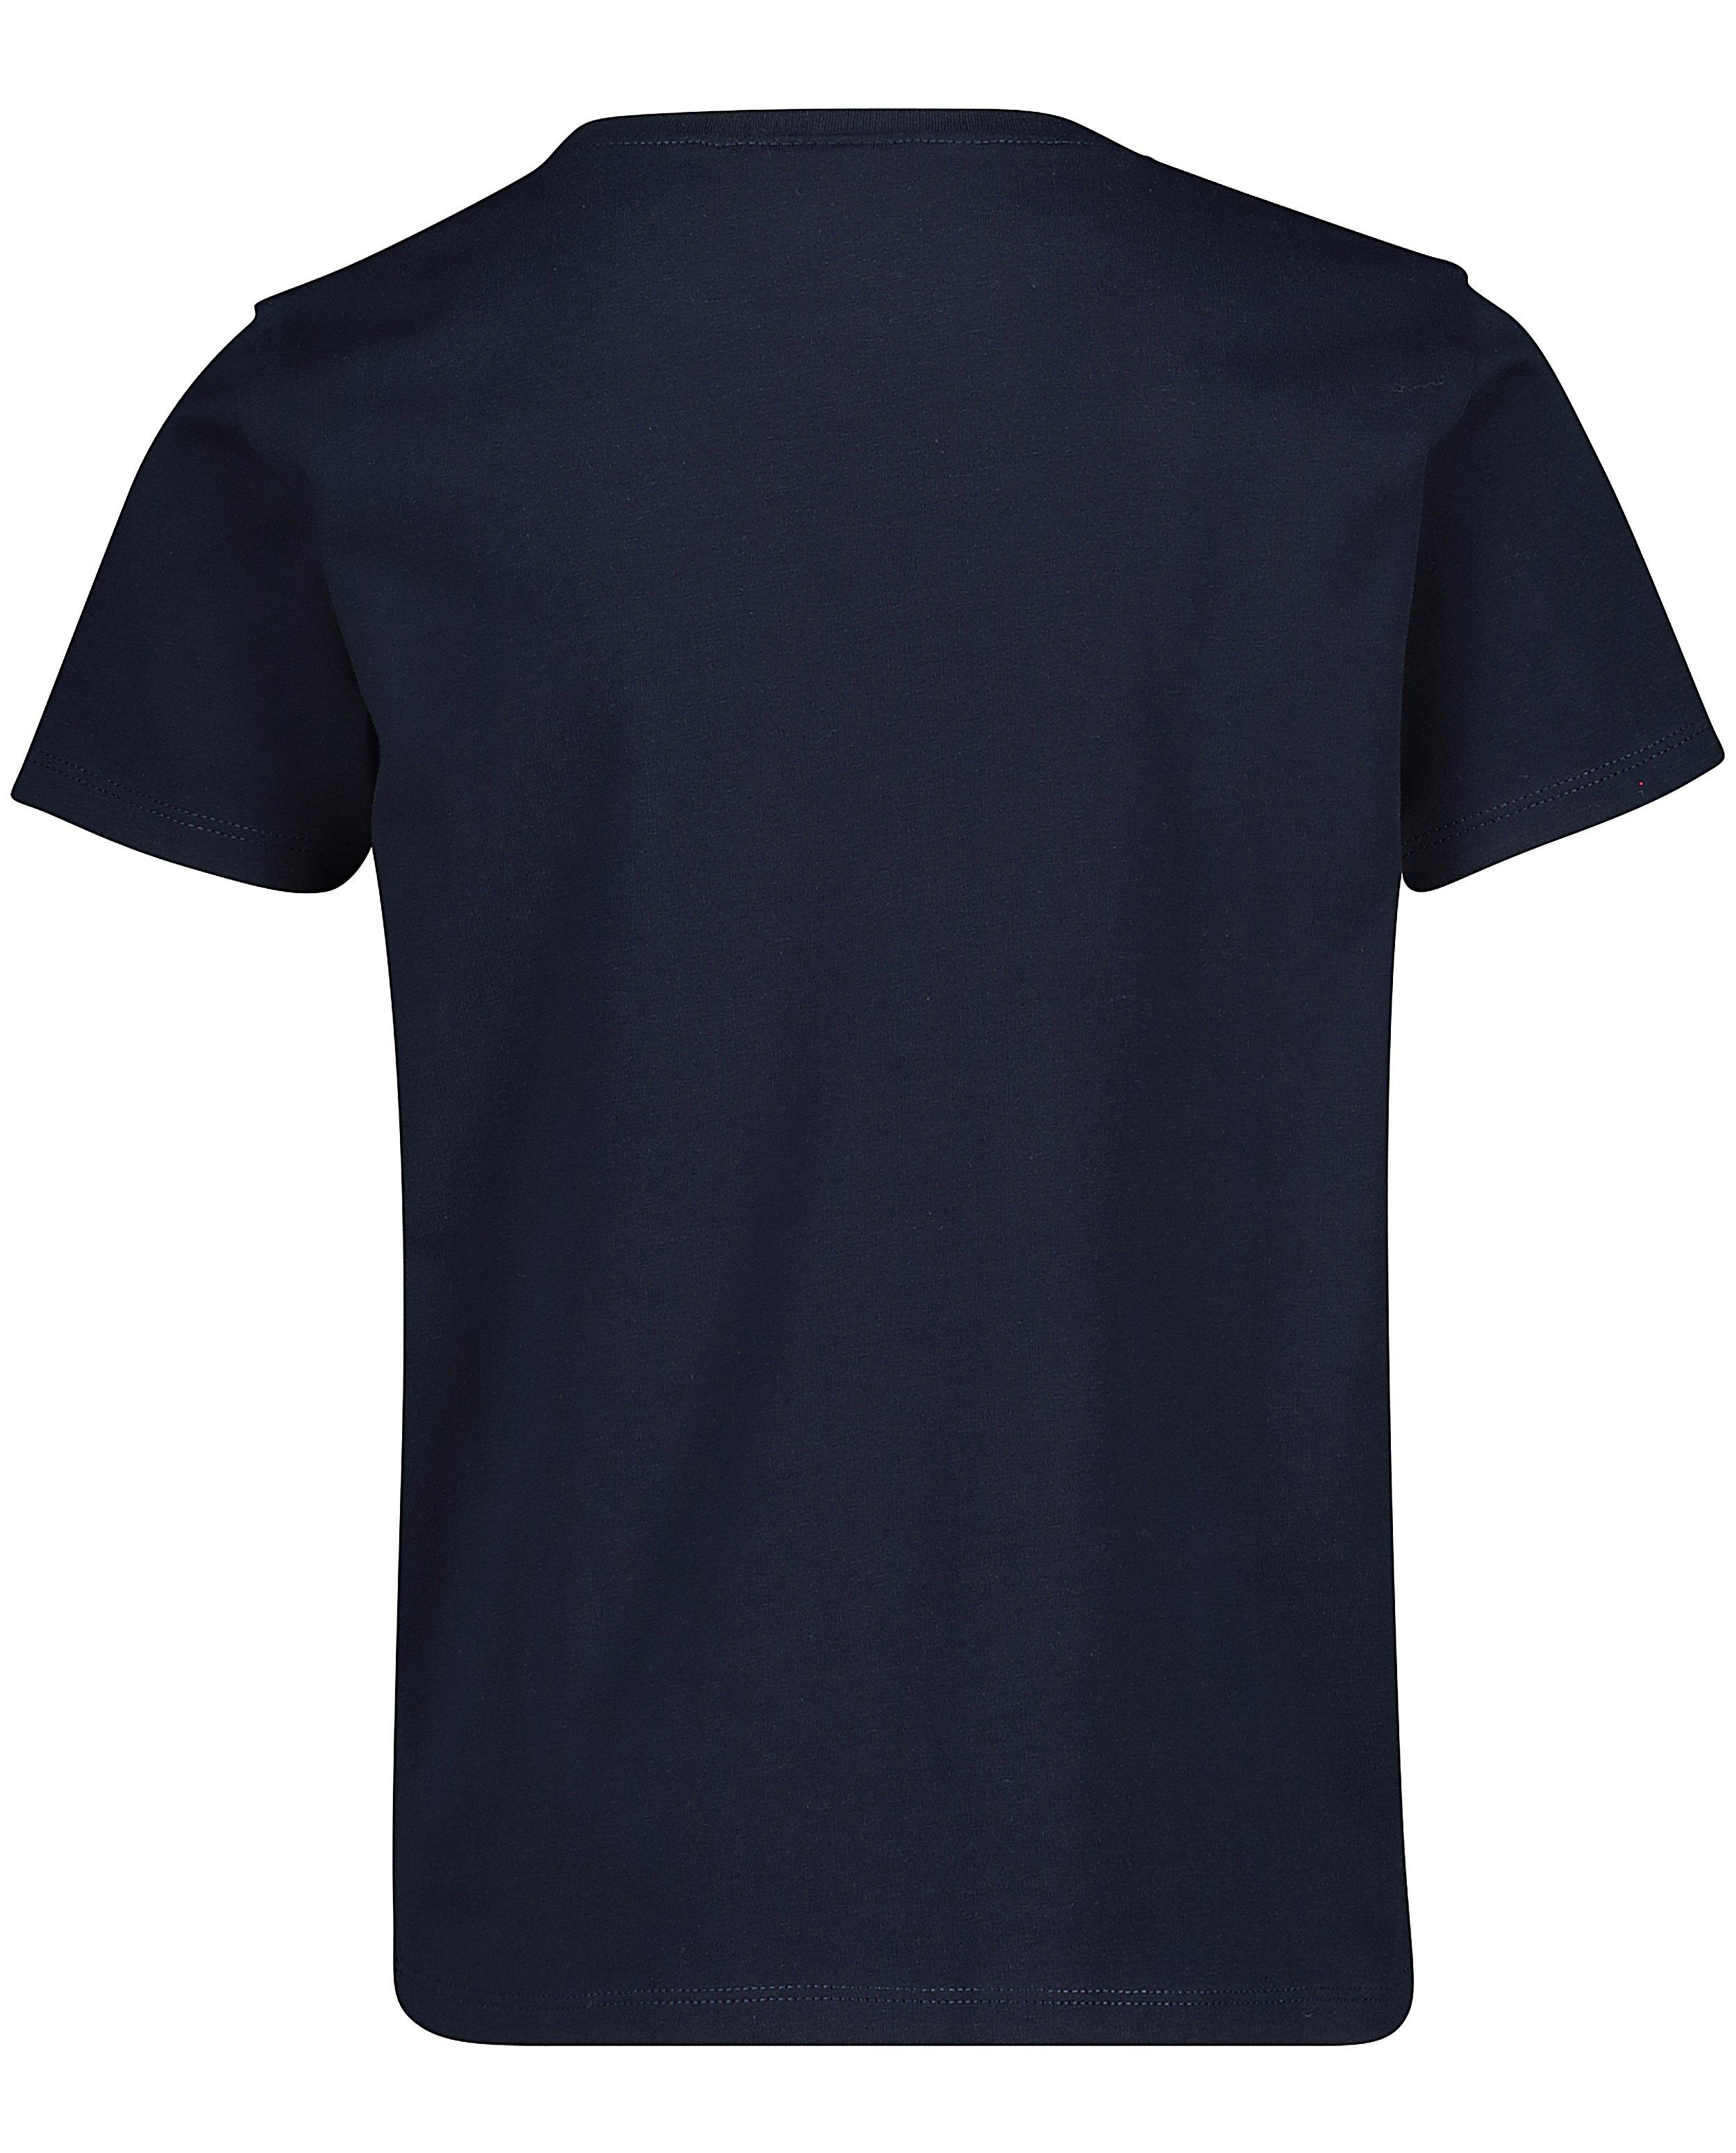 T-shirts - Blauw shirt van biokatoen #LikeMe